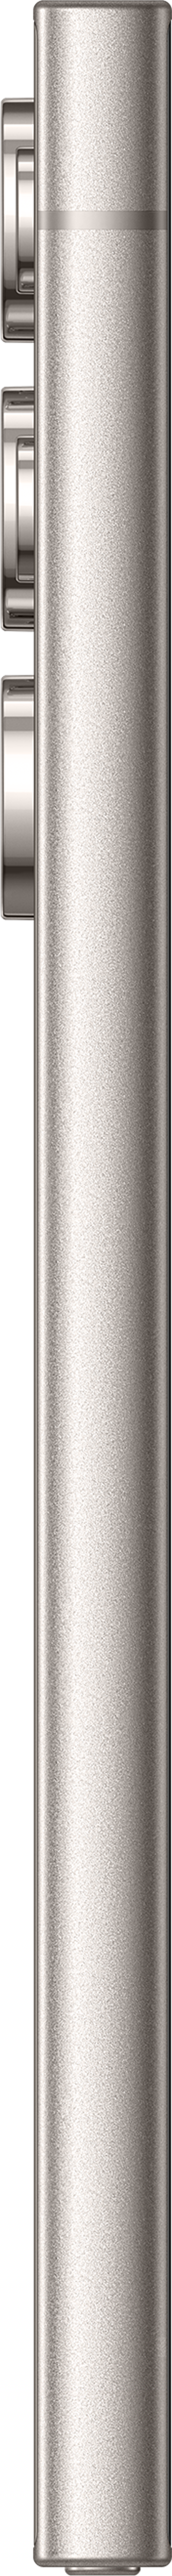 Samsung Galaxy S24 Ultra 1000GB Kaksois-SIM Harmaa, Titaani